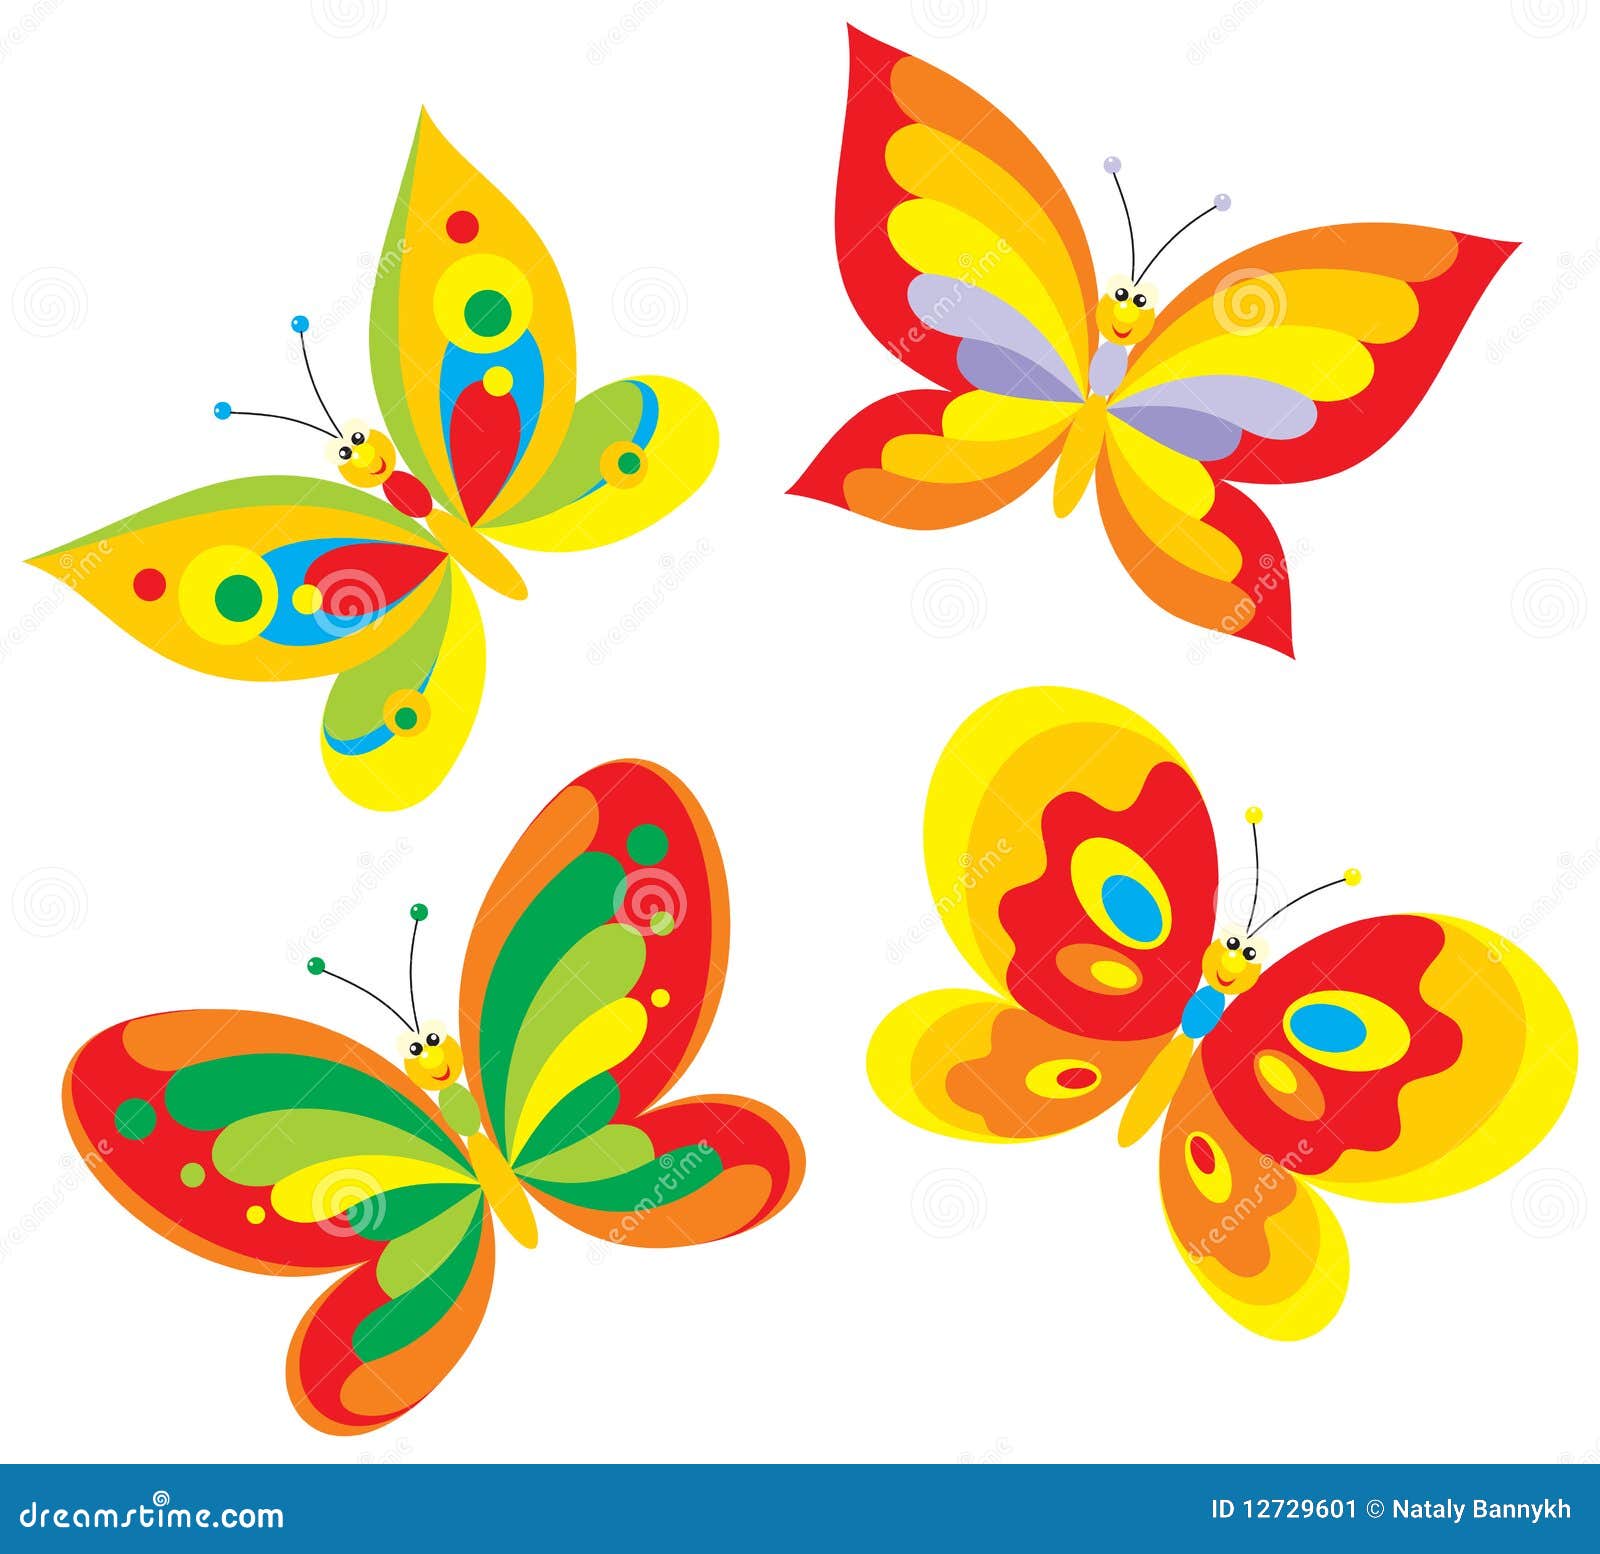 Бабочки для оформления детского сада